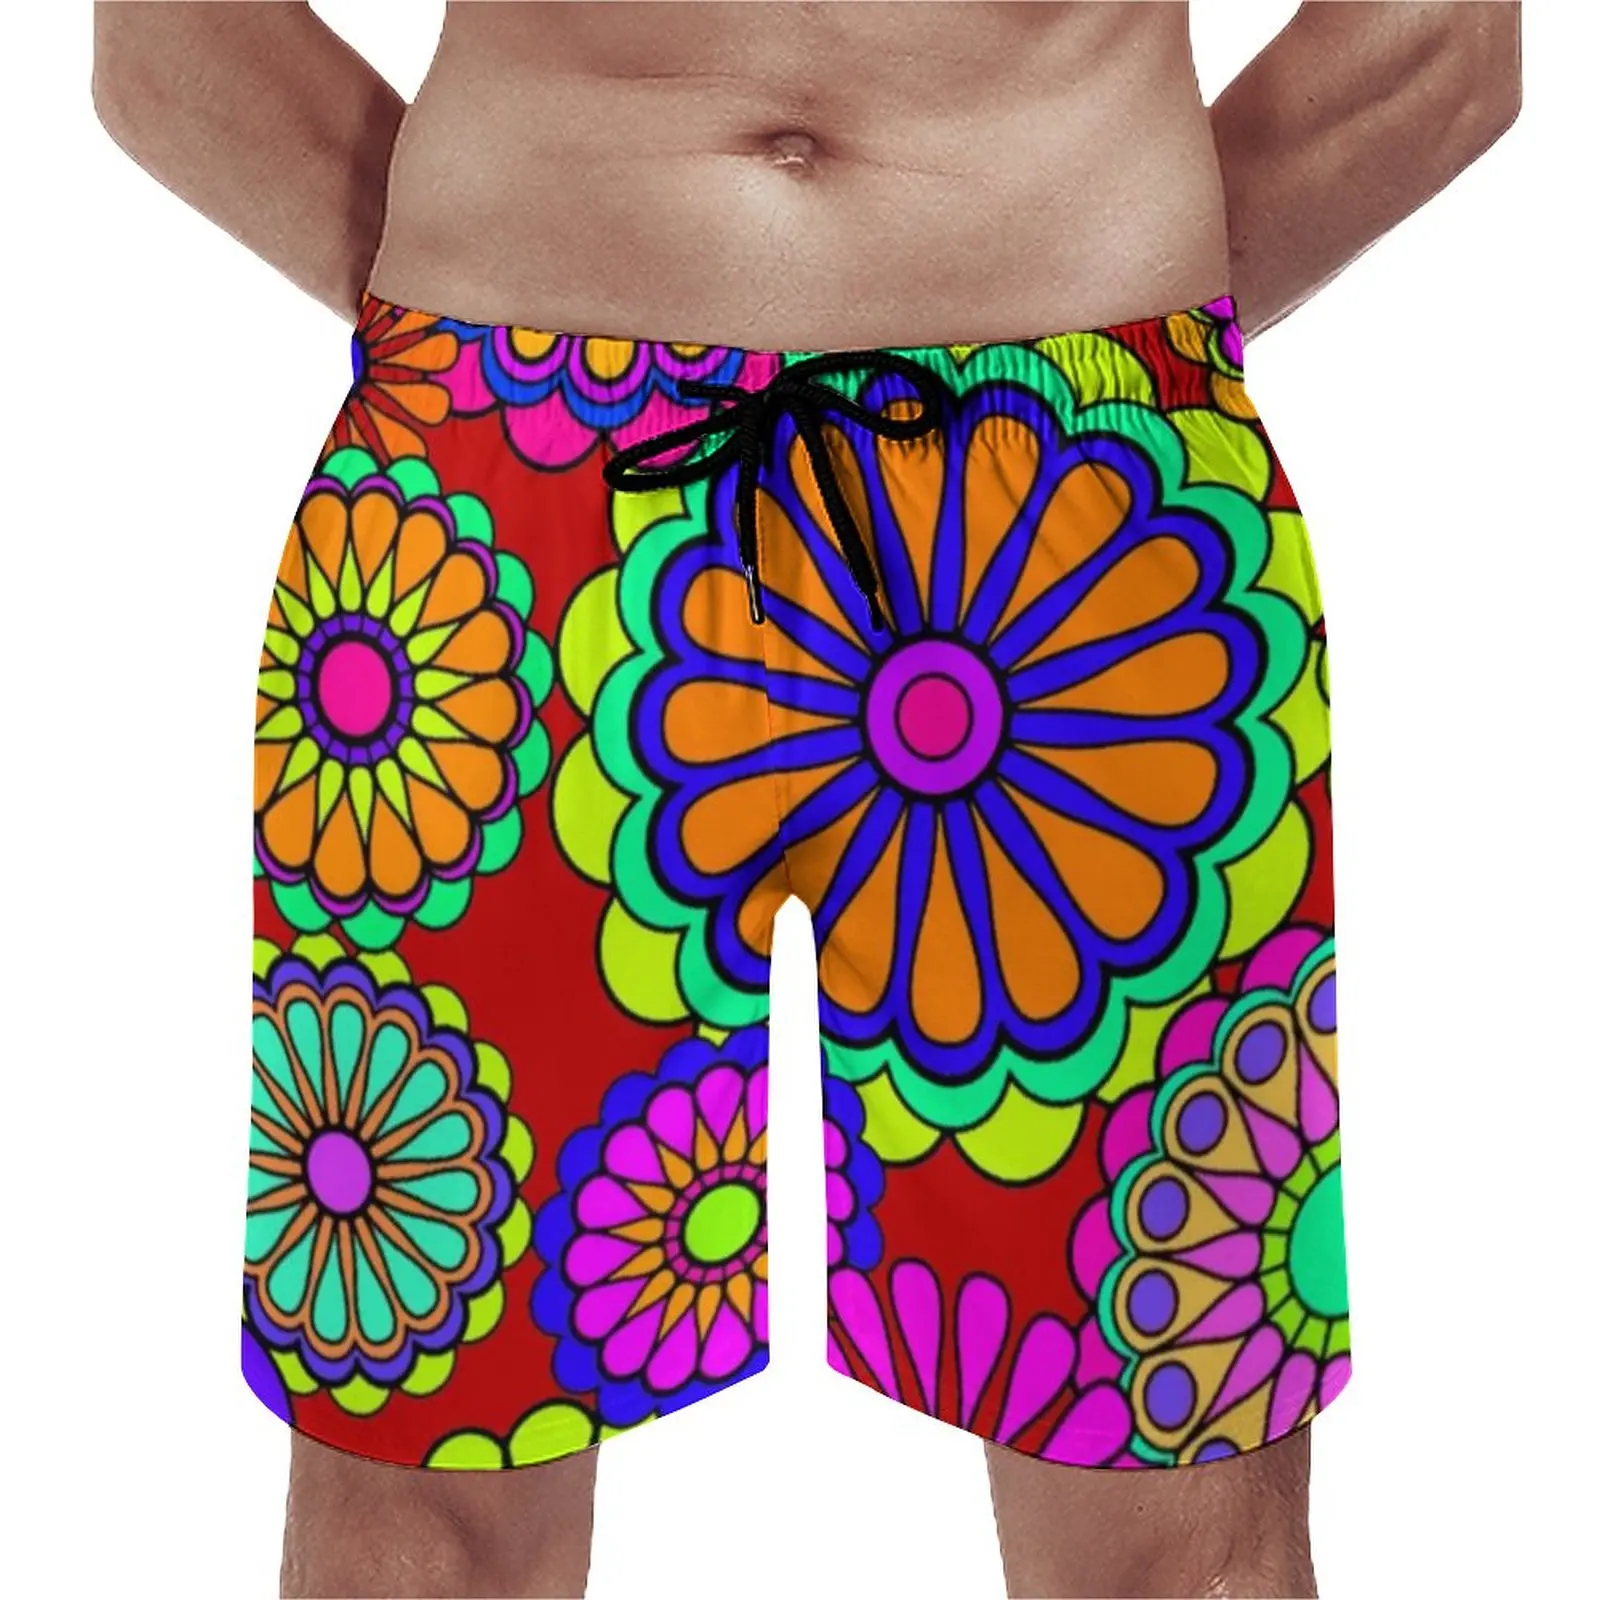 

Пляжные шорты для пляжа, Цветные Милые Гавайские плавки в стиле ретро, быстросохнущие спортивные модные бриджи с цветами в стиле хиппи